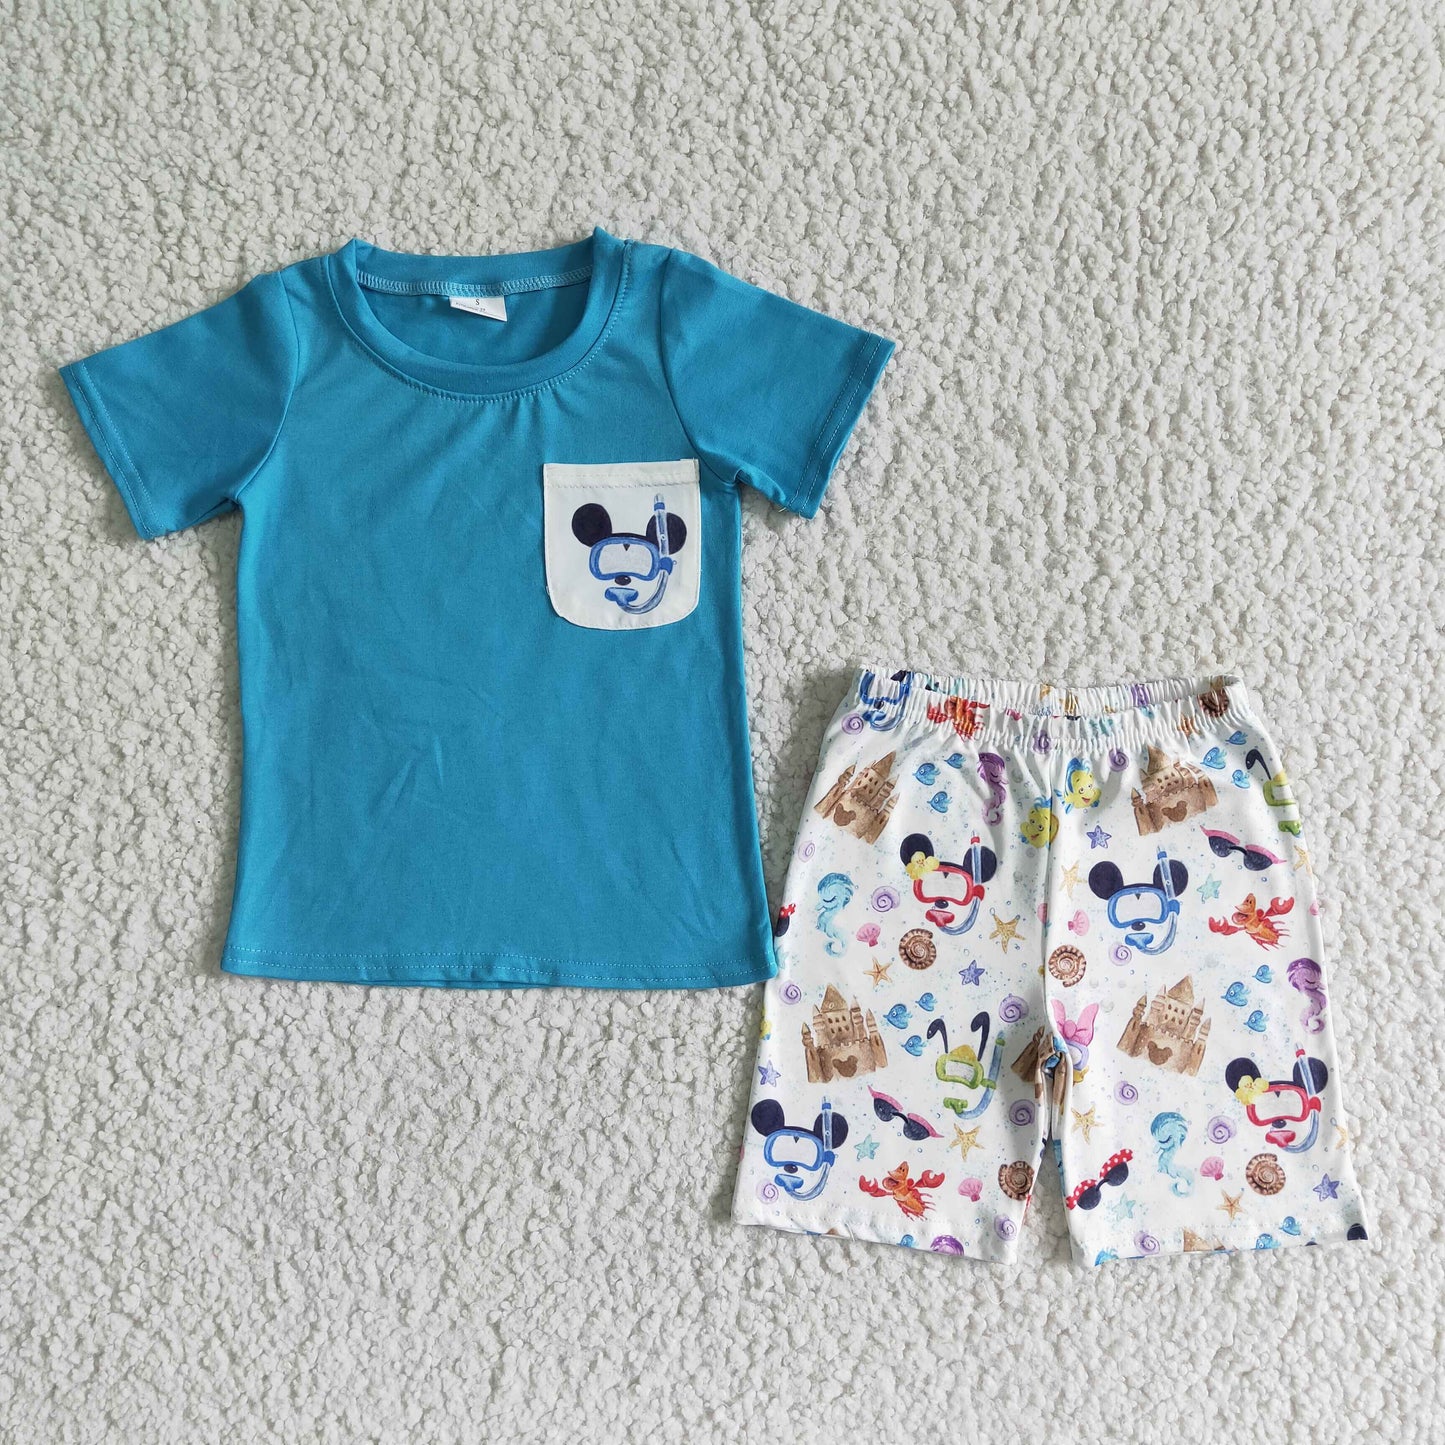 Blue shirt cute print children set cute boy clothes